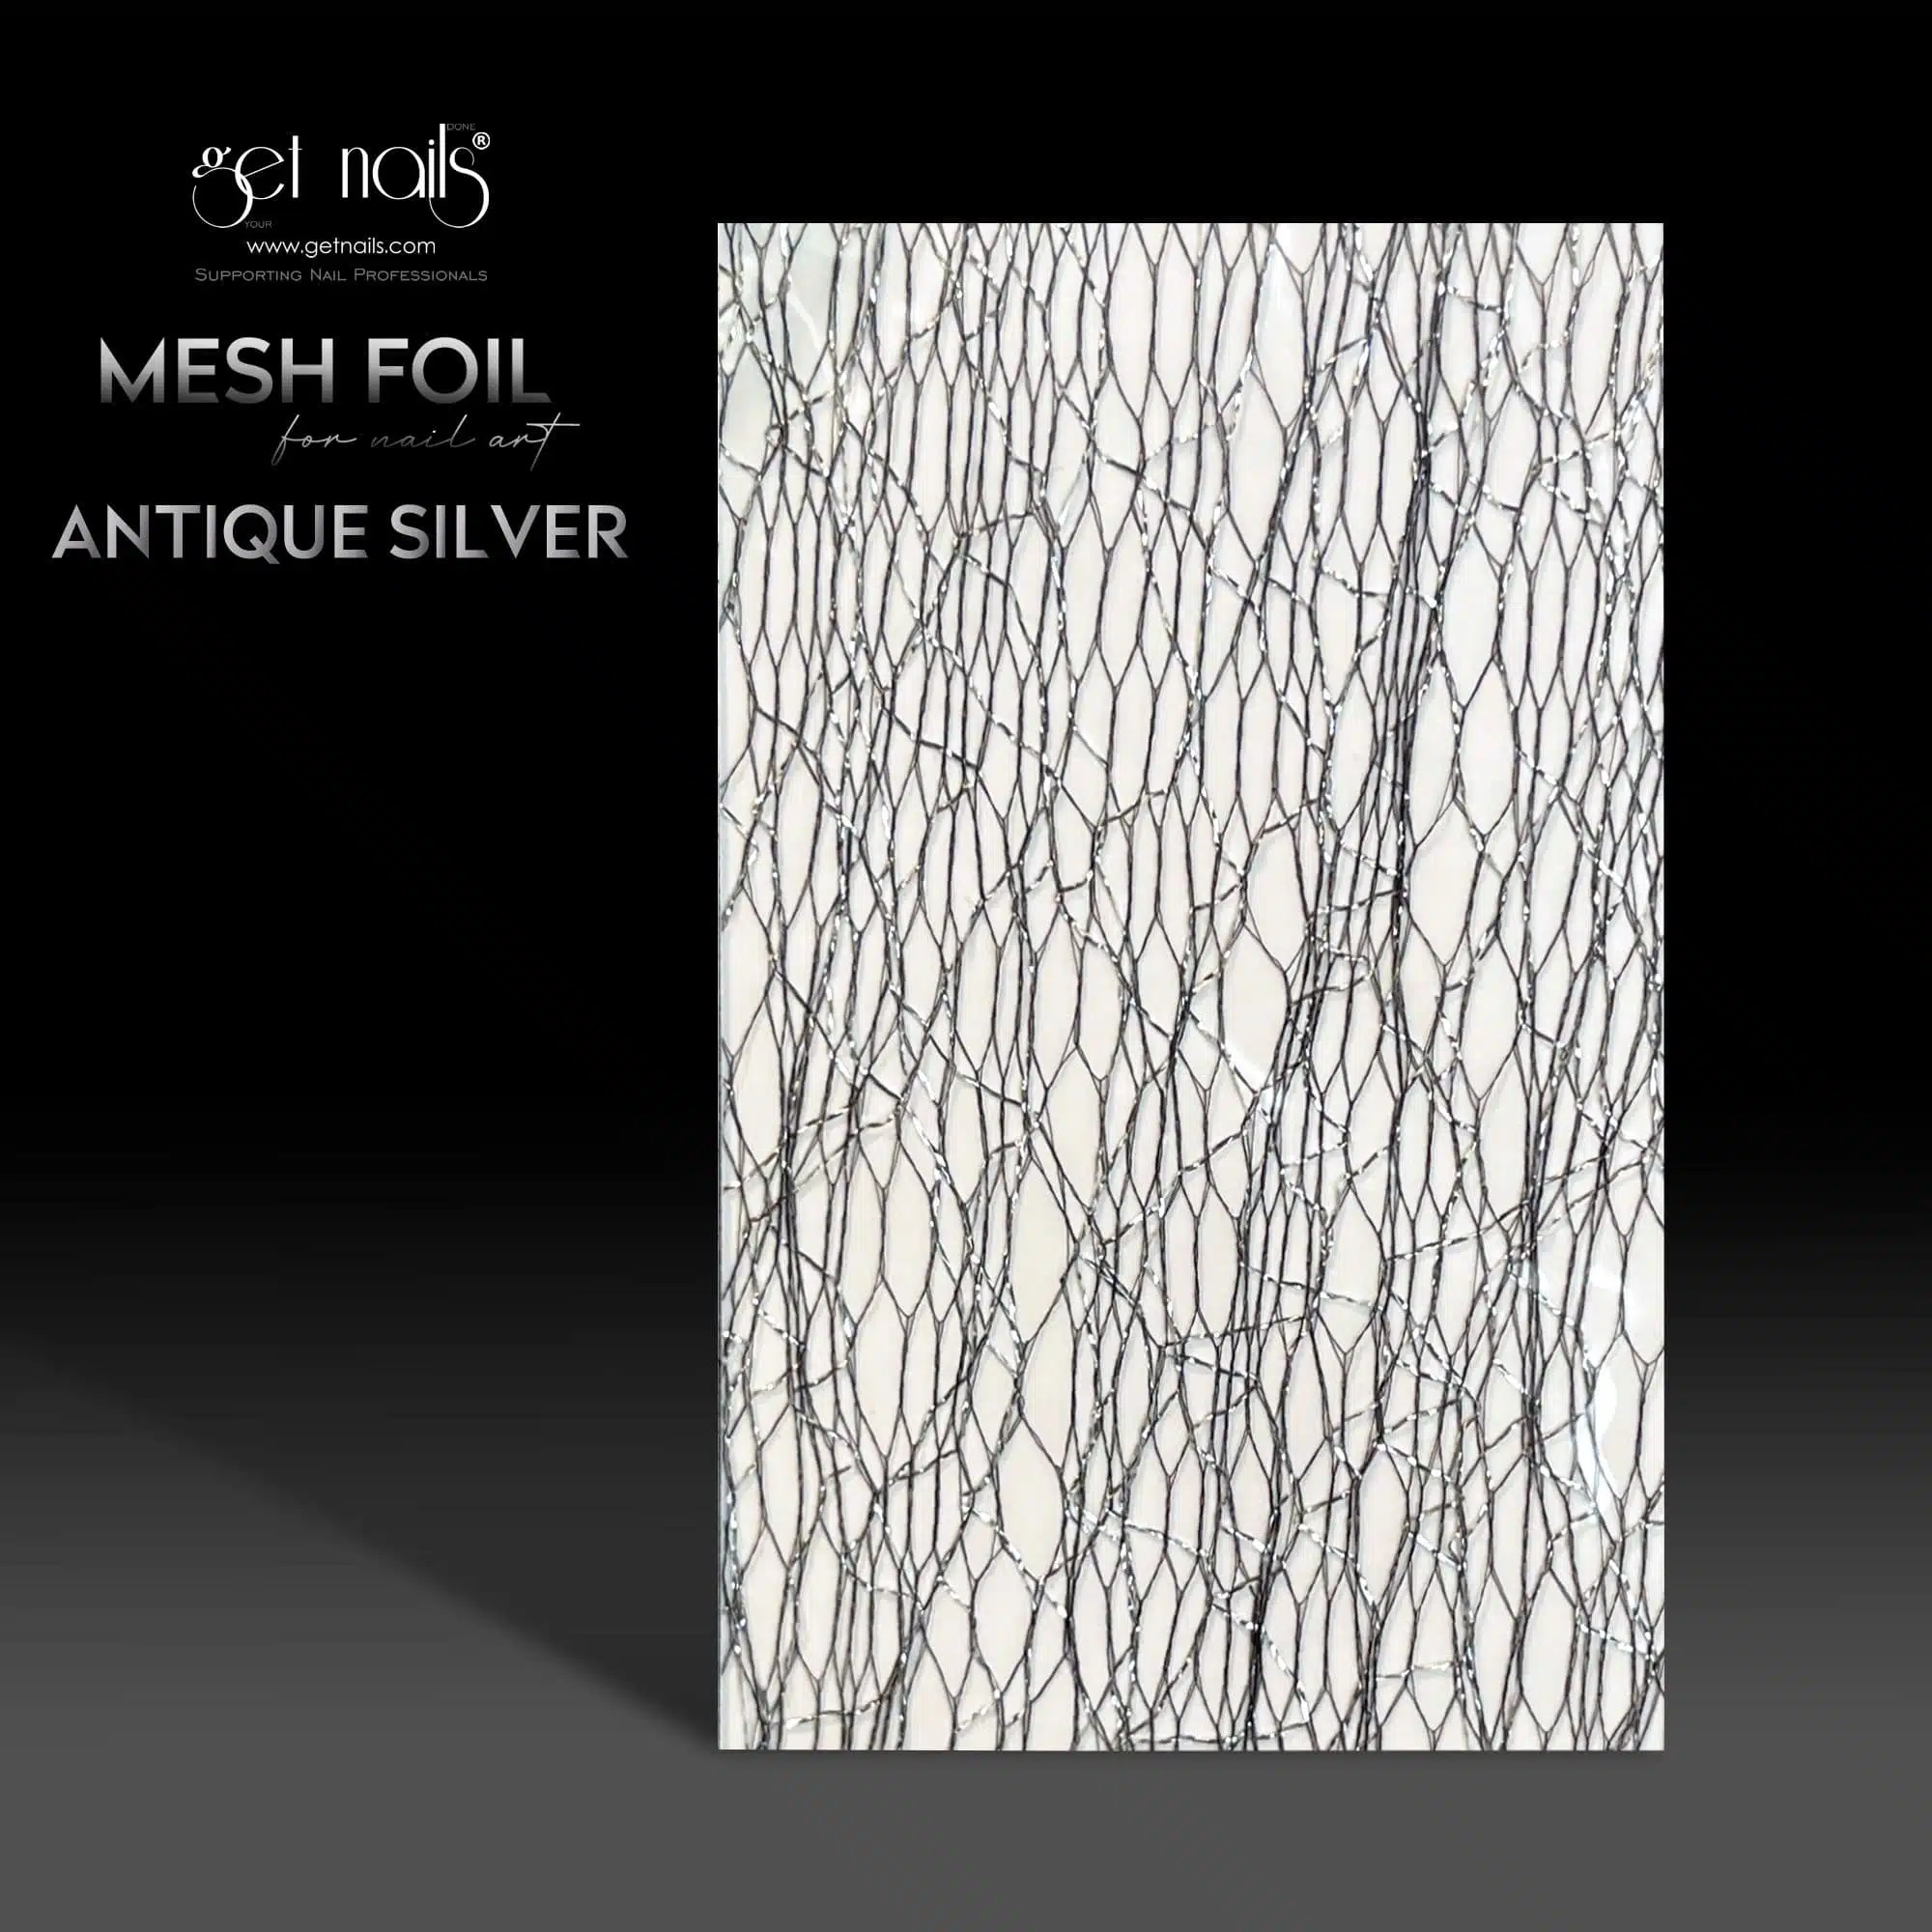 Get Nails Austria - Mesh Foil Antique Silver